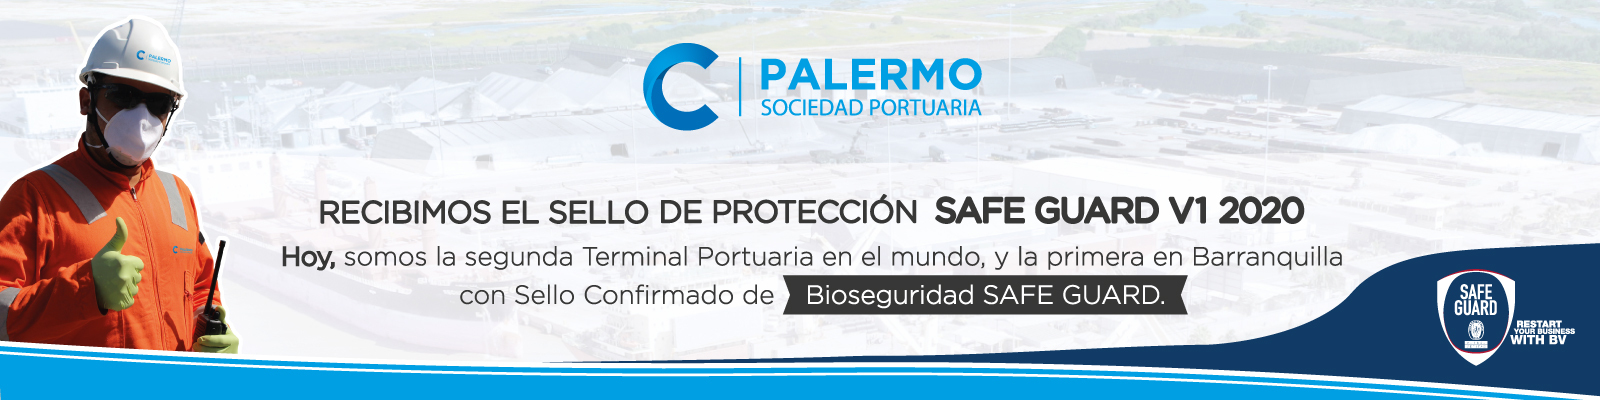 Certificación-Primer-puerto-en-seguridad-banner (1)